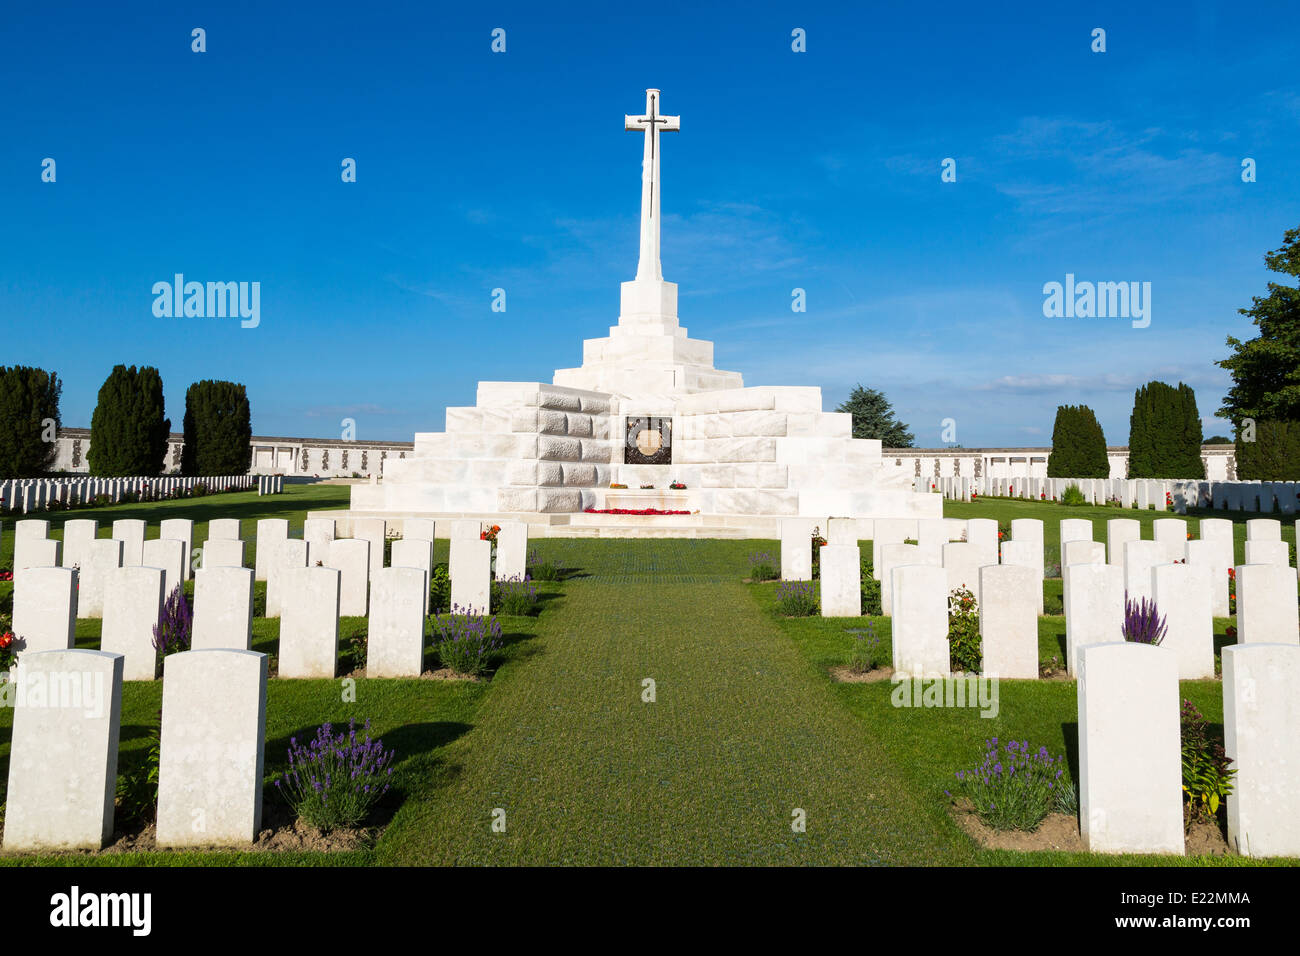 La Première Guerre mondiale de Tyne Cot Cemetery, le plus grand cimetière de guerre britannique dans le monde. près d'Ypres, Flandre, Zonnebeke, Belgique Banque D'Images